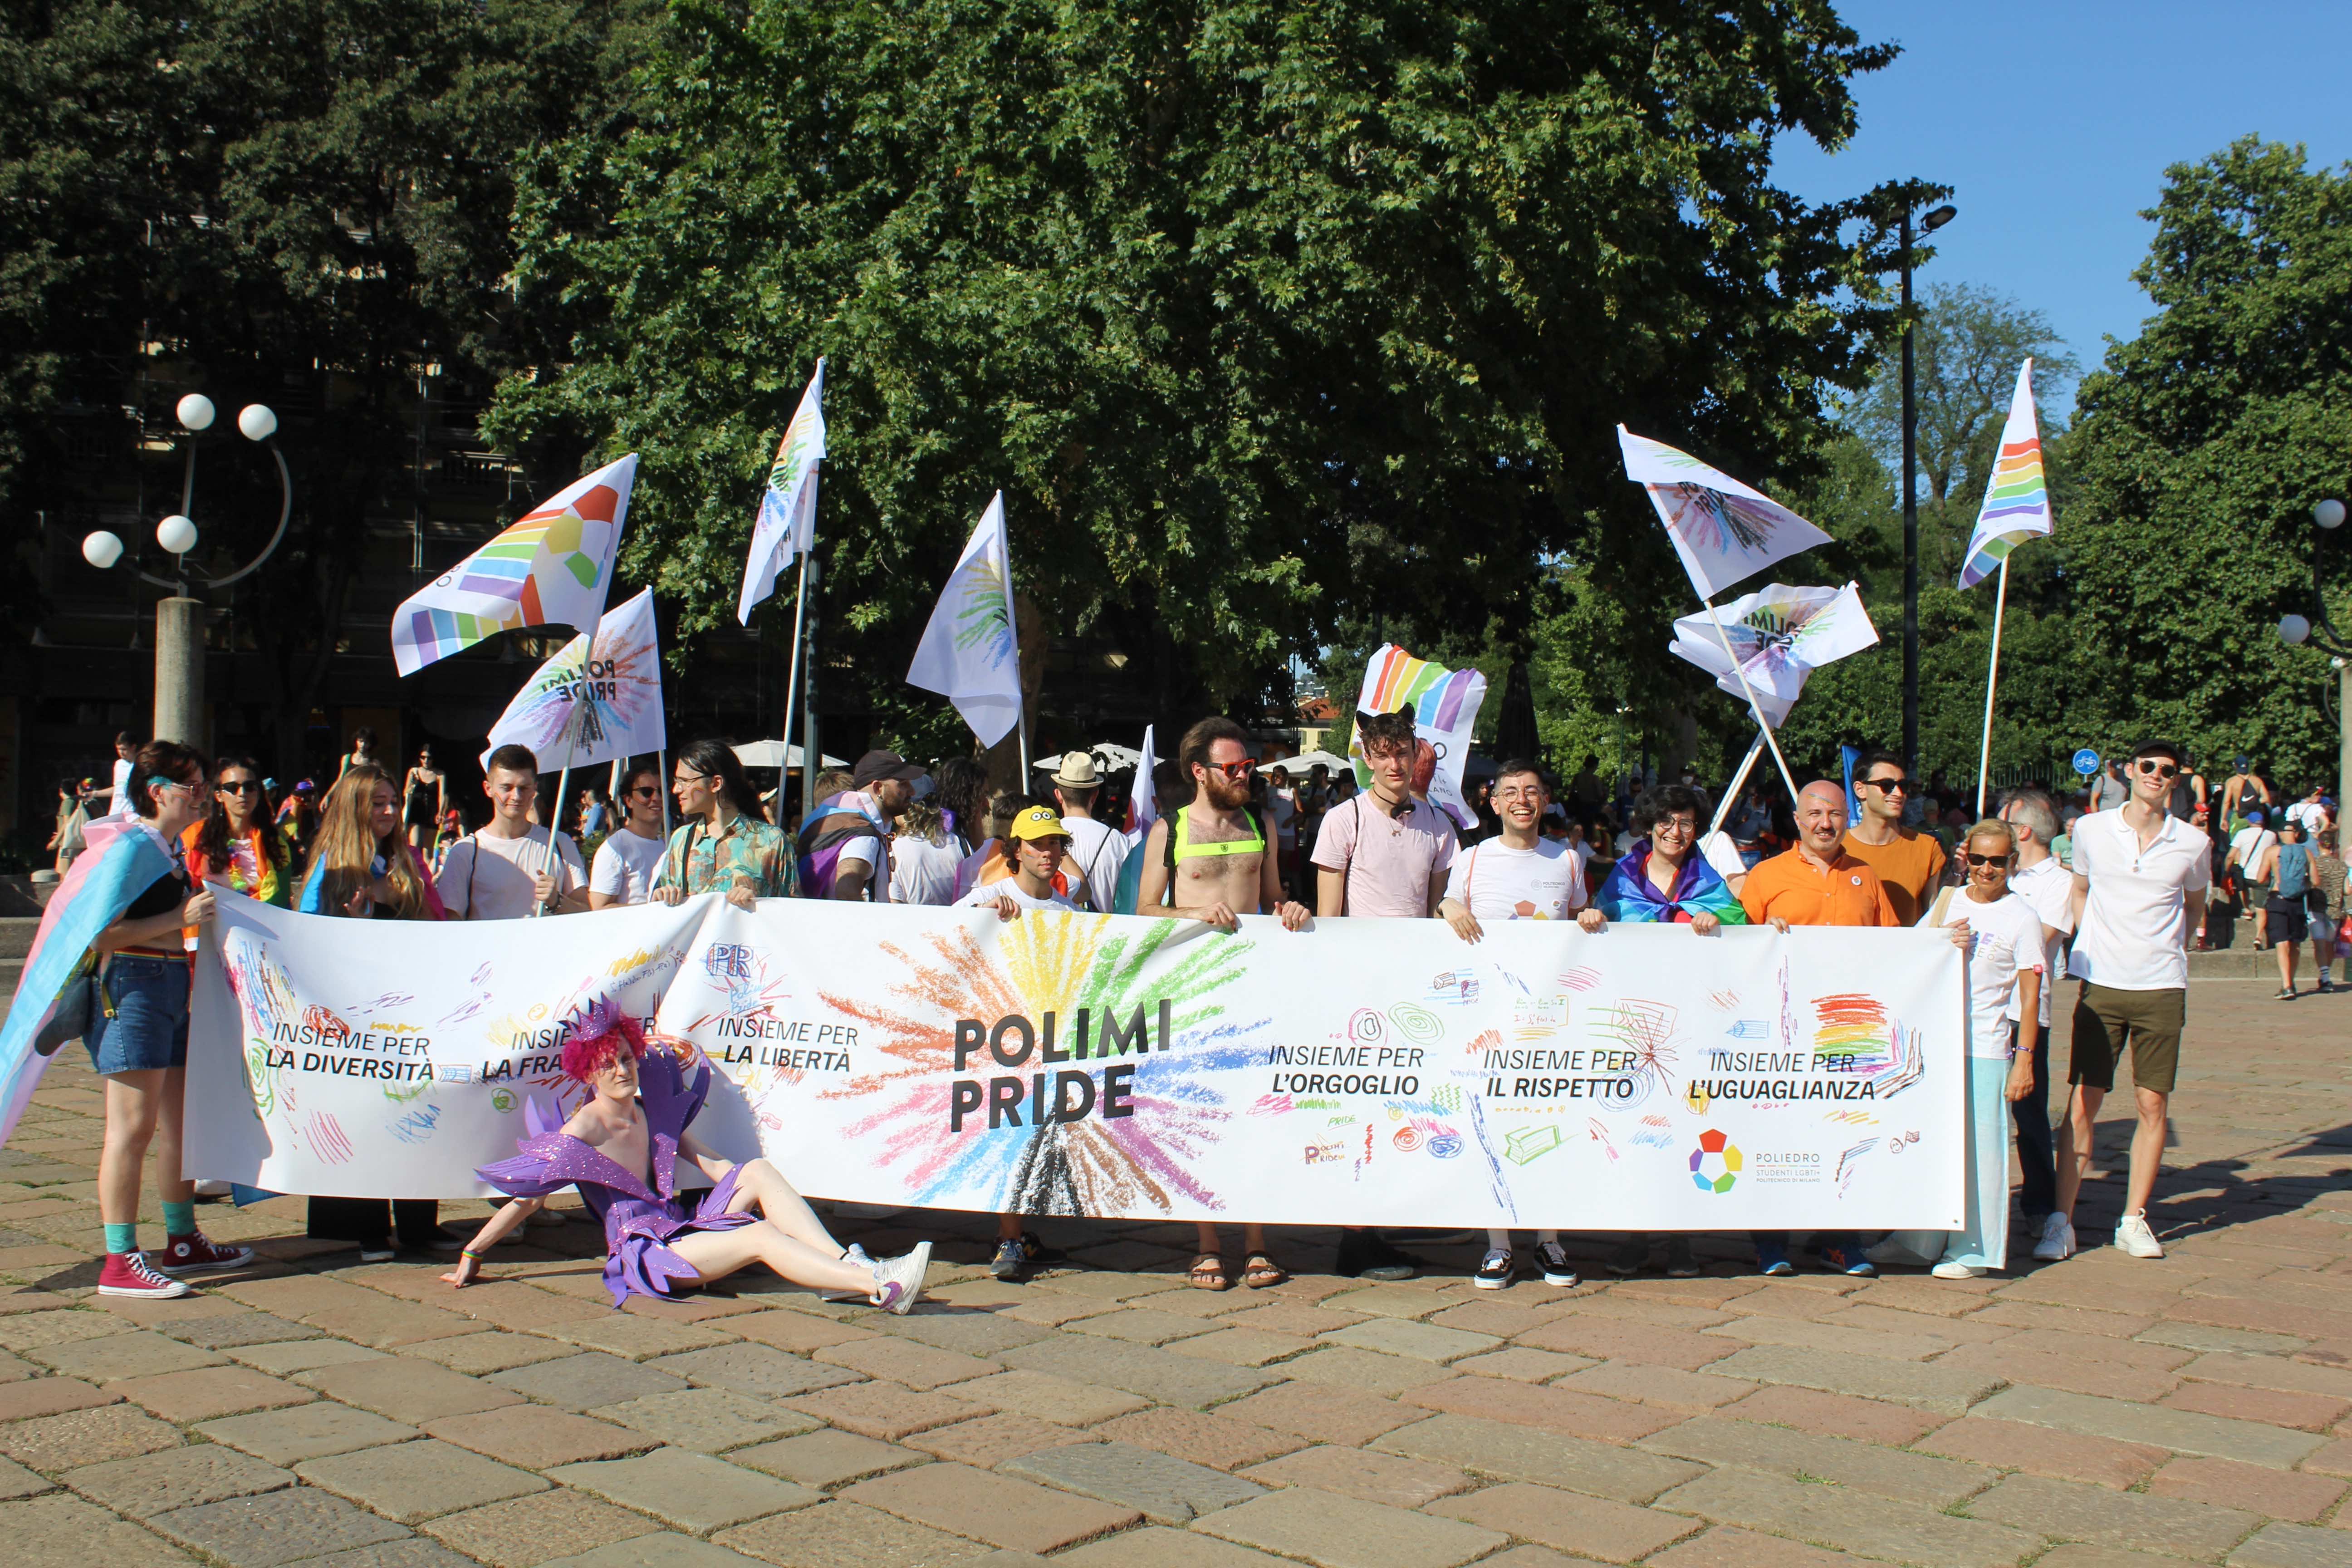 Polimi Pride 2022 banner